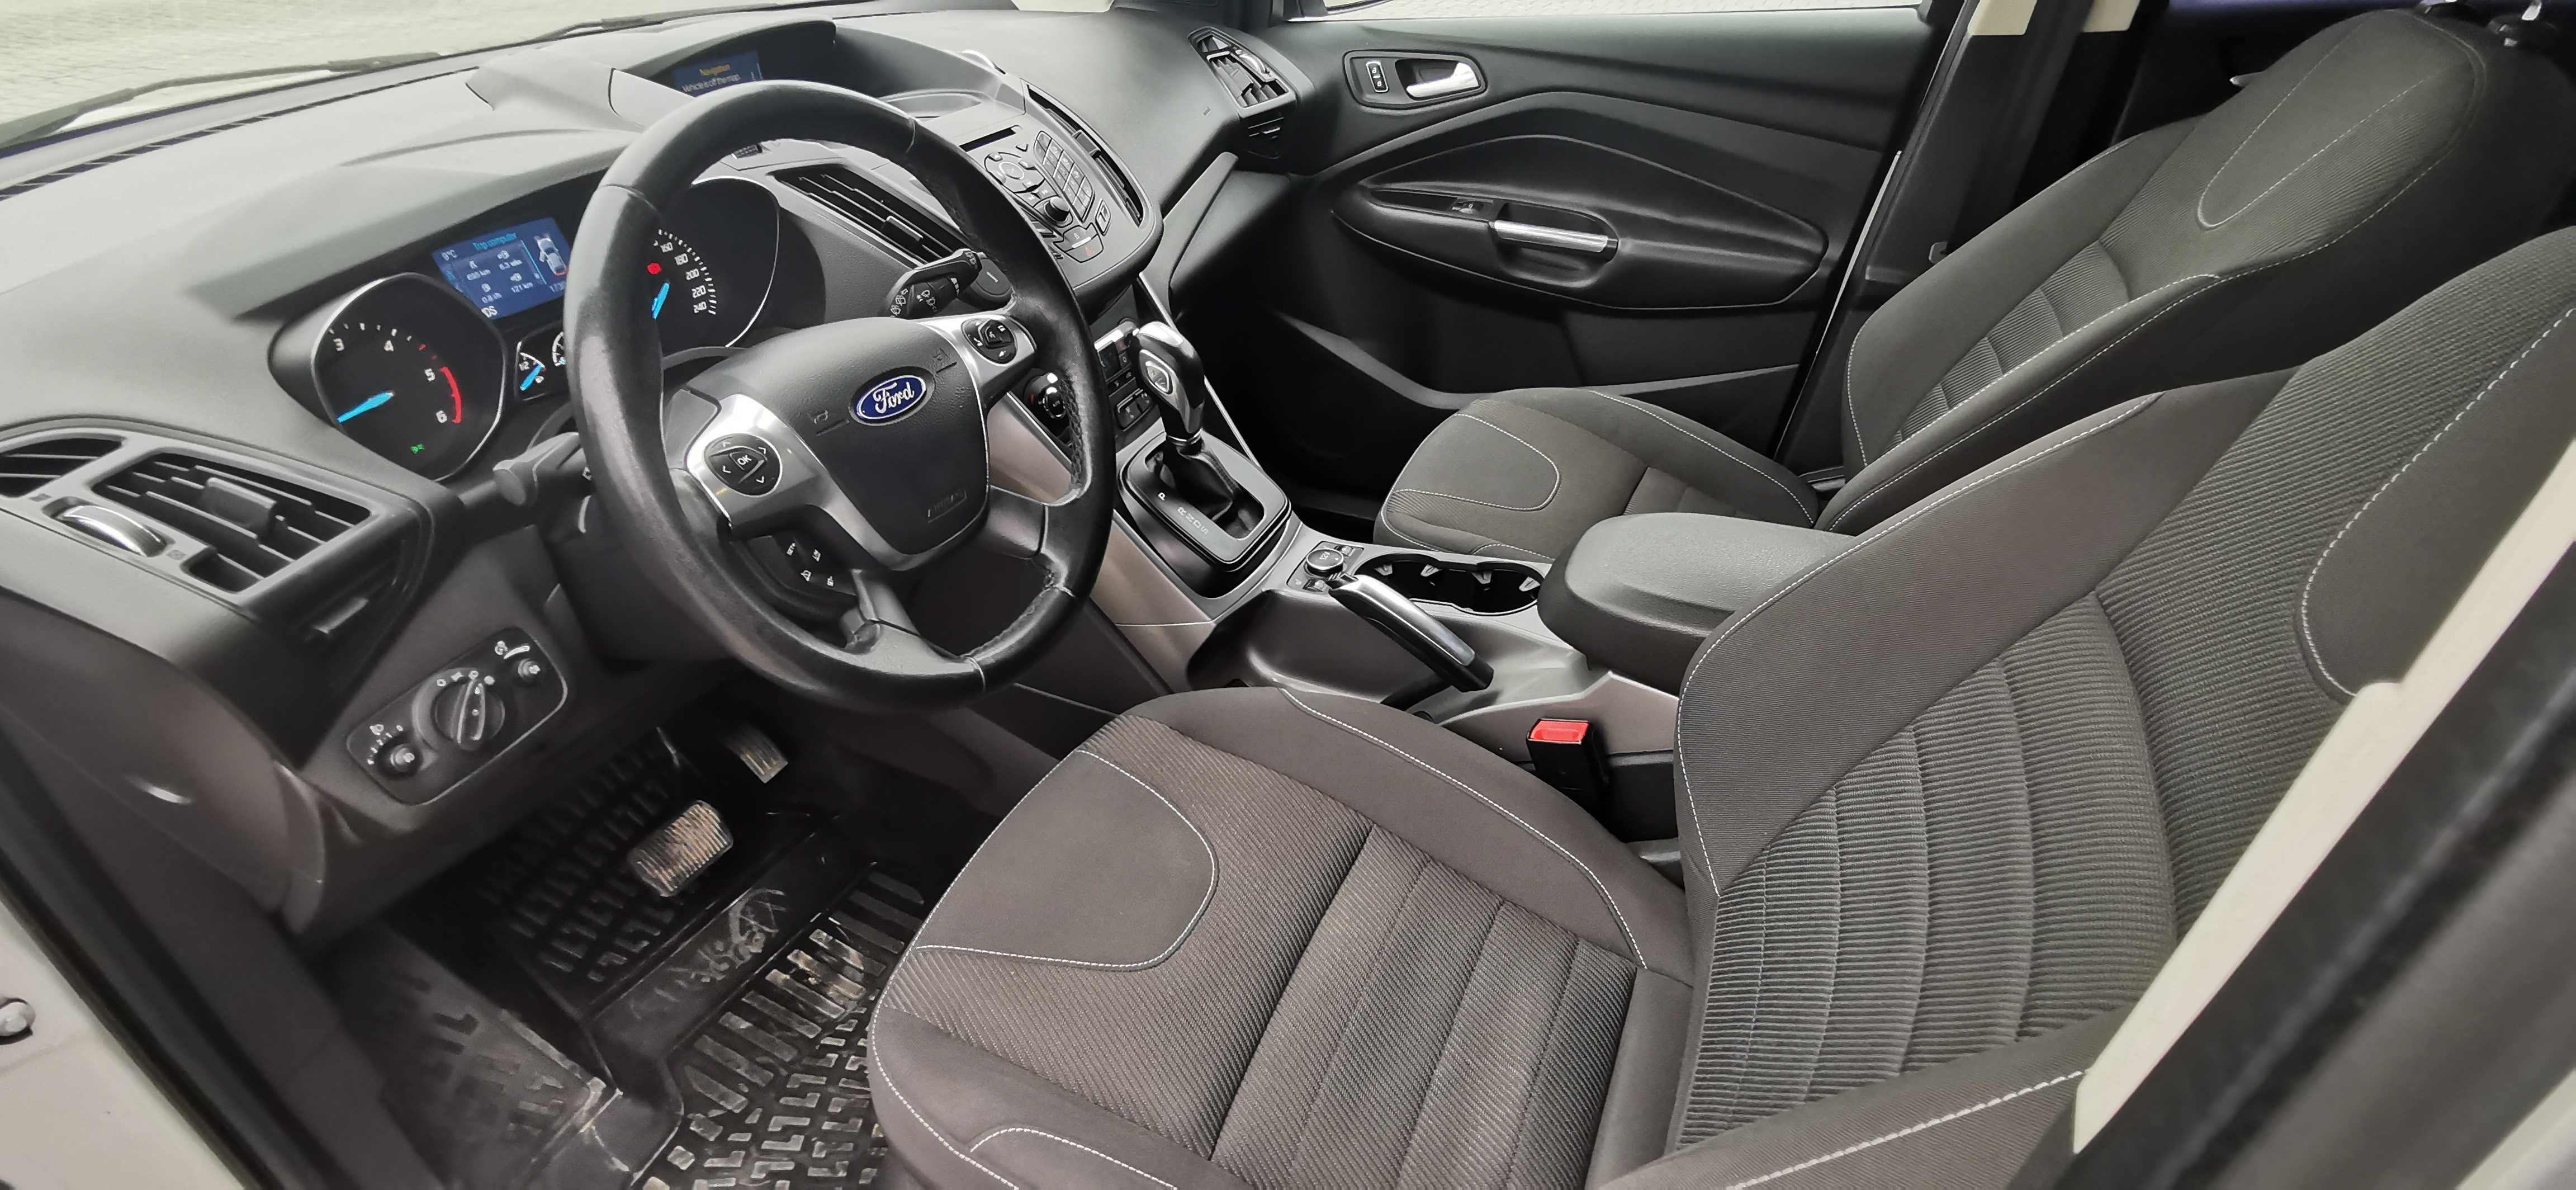 Ford Kuga 2013 4x4